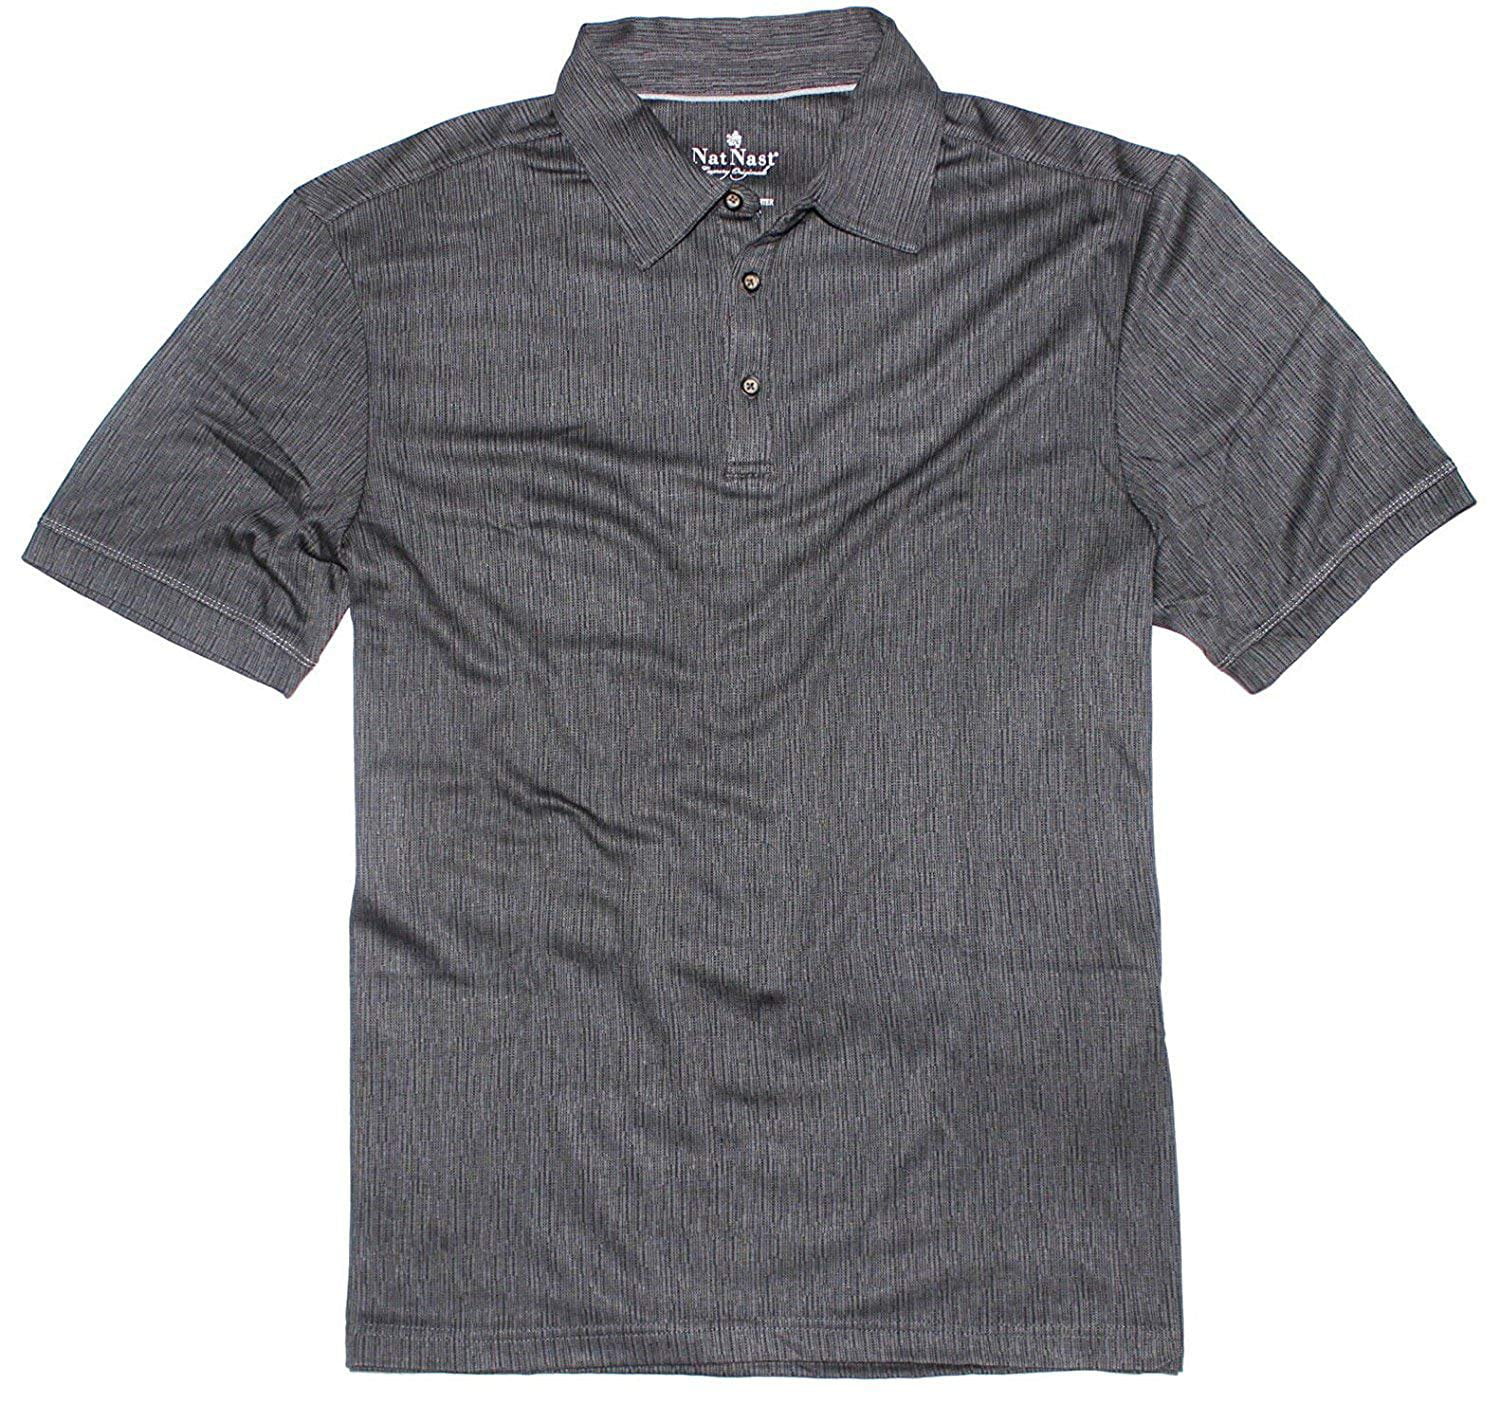 Nat Nast Luxury Originals Men's Short Sleeve Polo Shirt in Black Medium ...